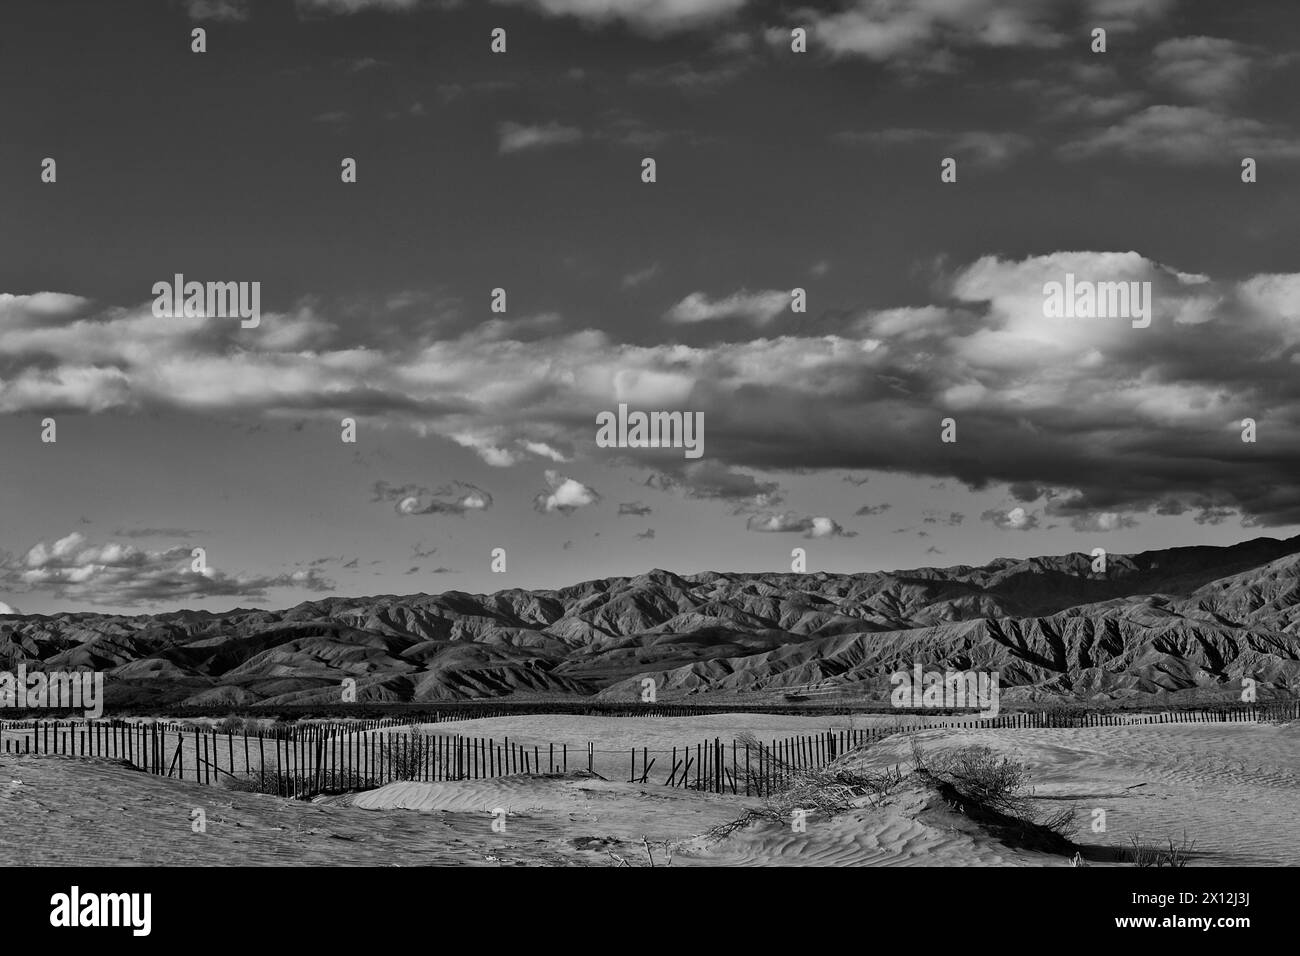 Paysage désertique avec ciel dramatique en noir et blanc Banque D'Images